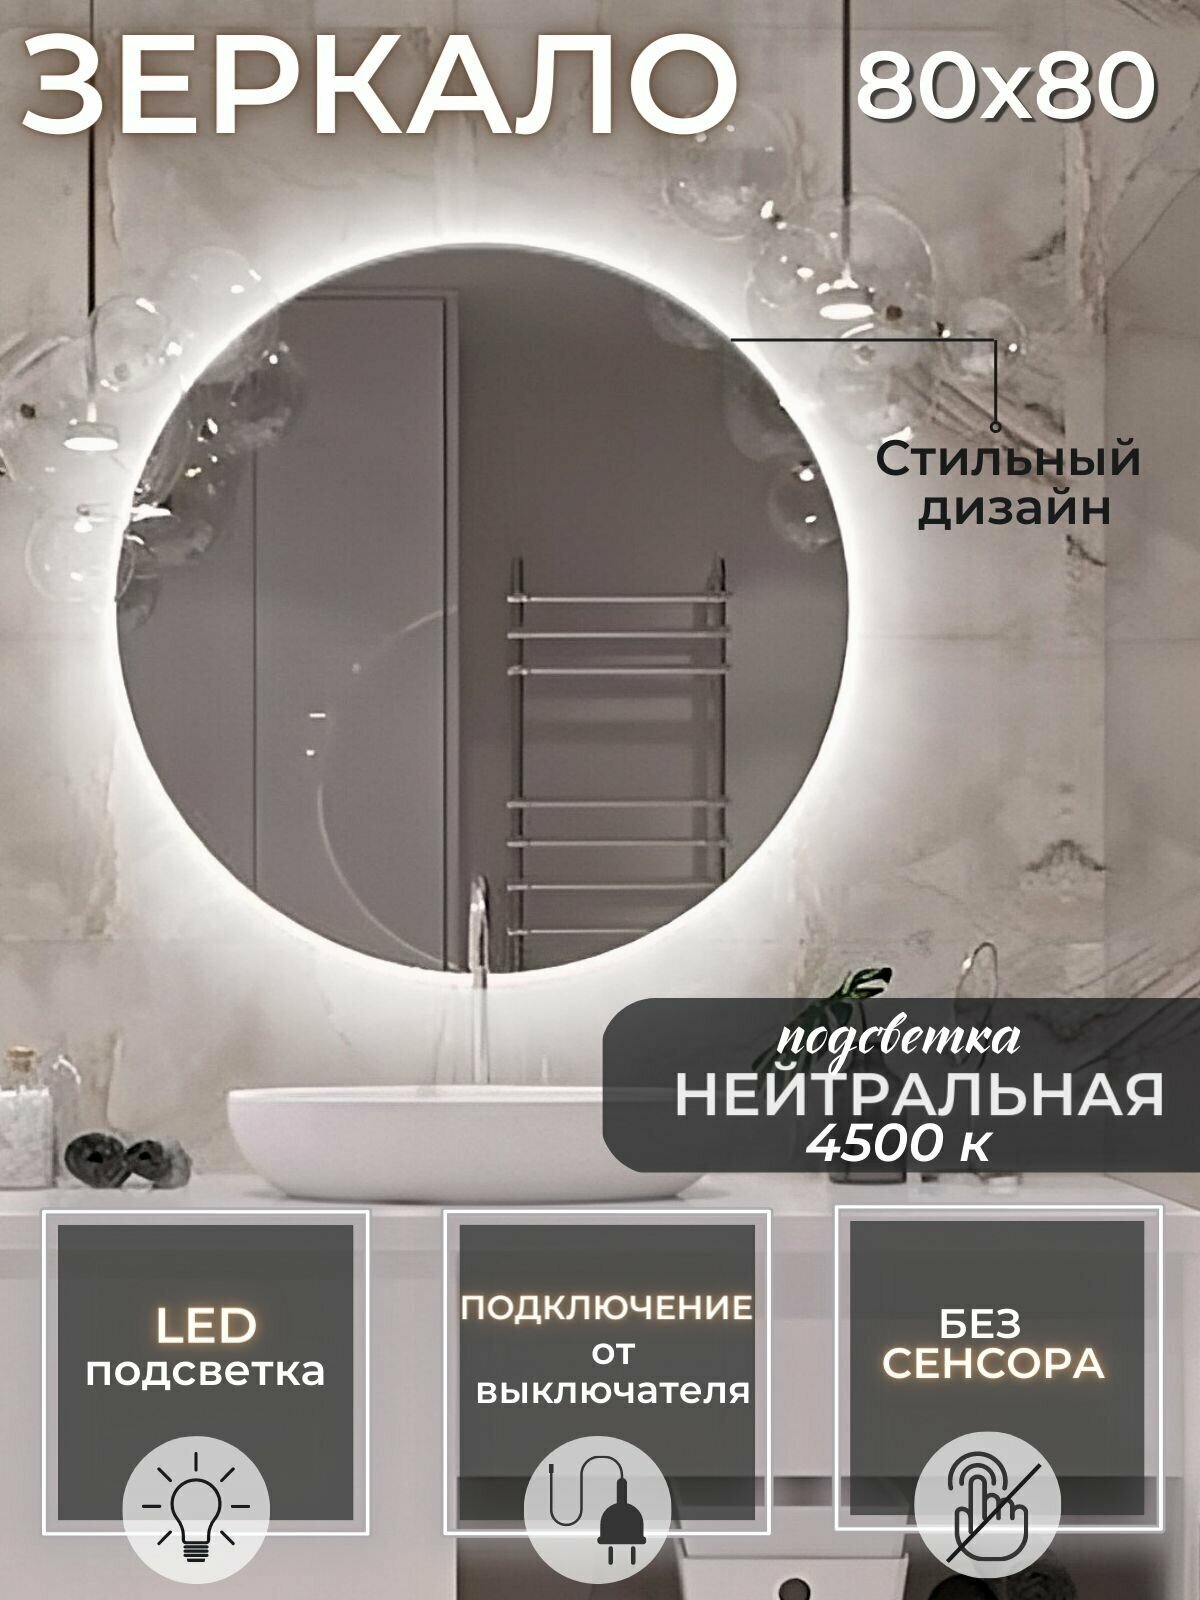 зеркало в ванную с подсветкой 4500К (нейтральный свет) круглое диаметр 80 см. без сенсора подключение от выключателя - фотография № 1